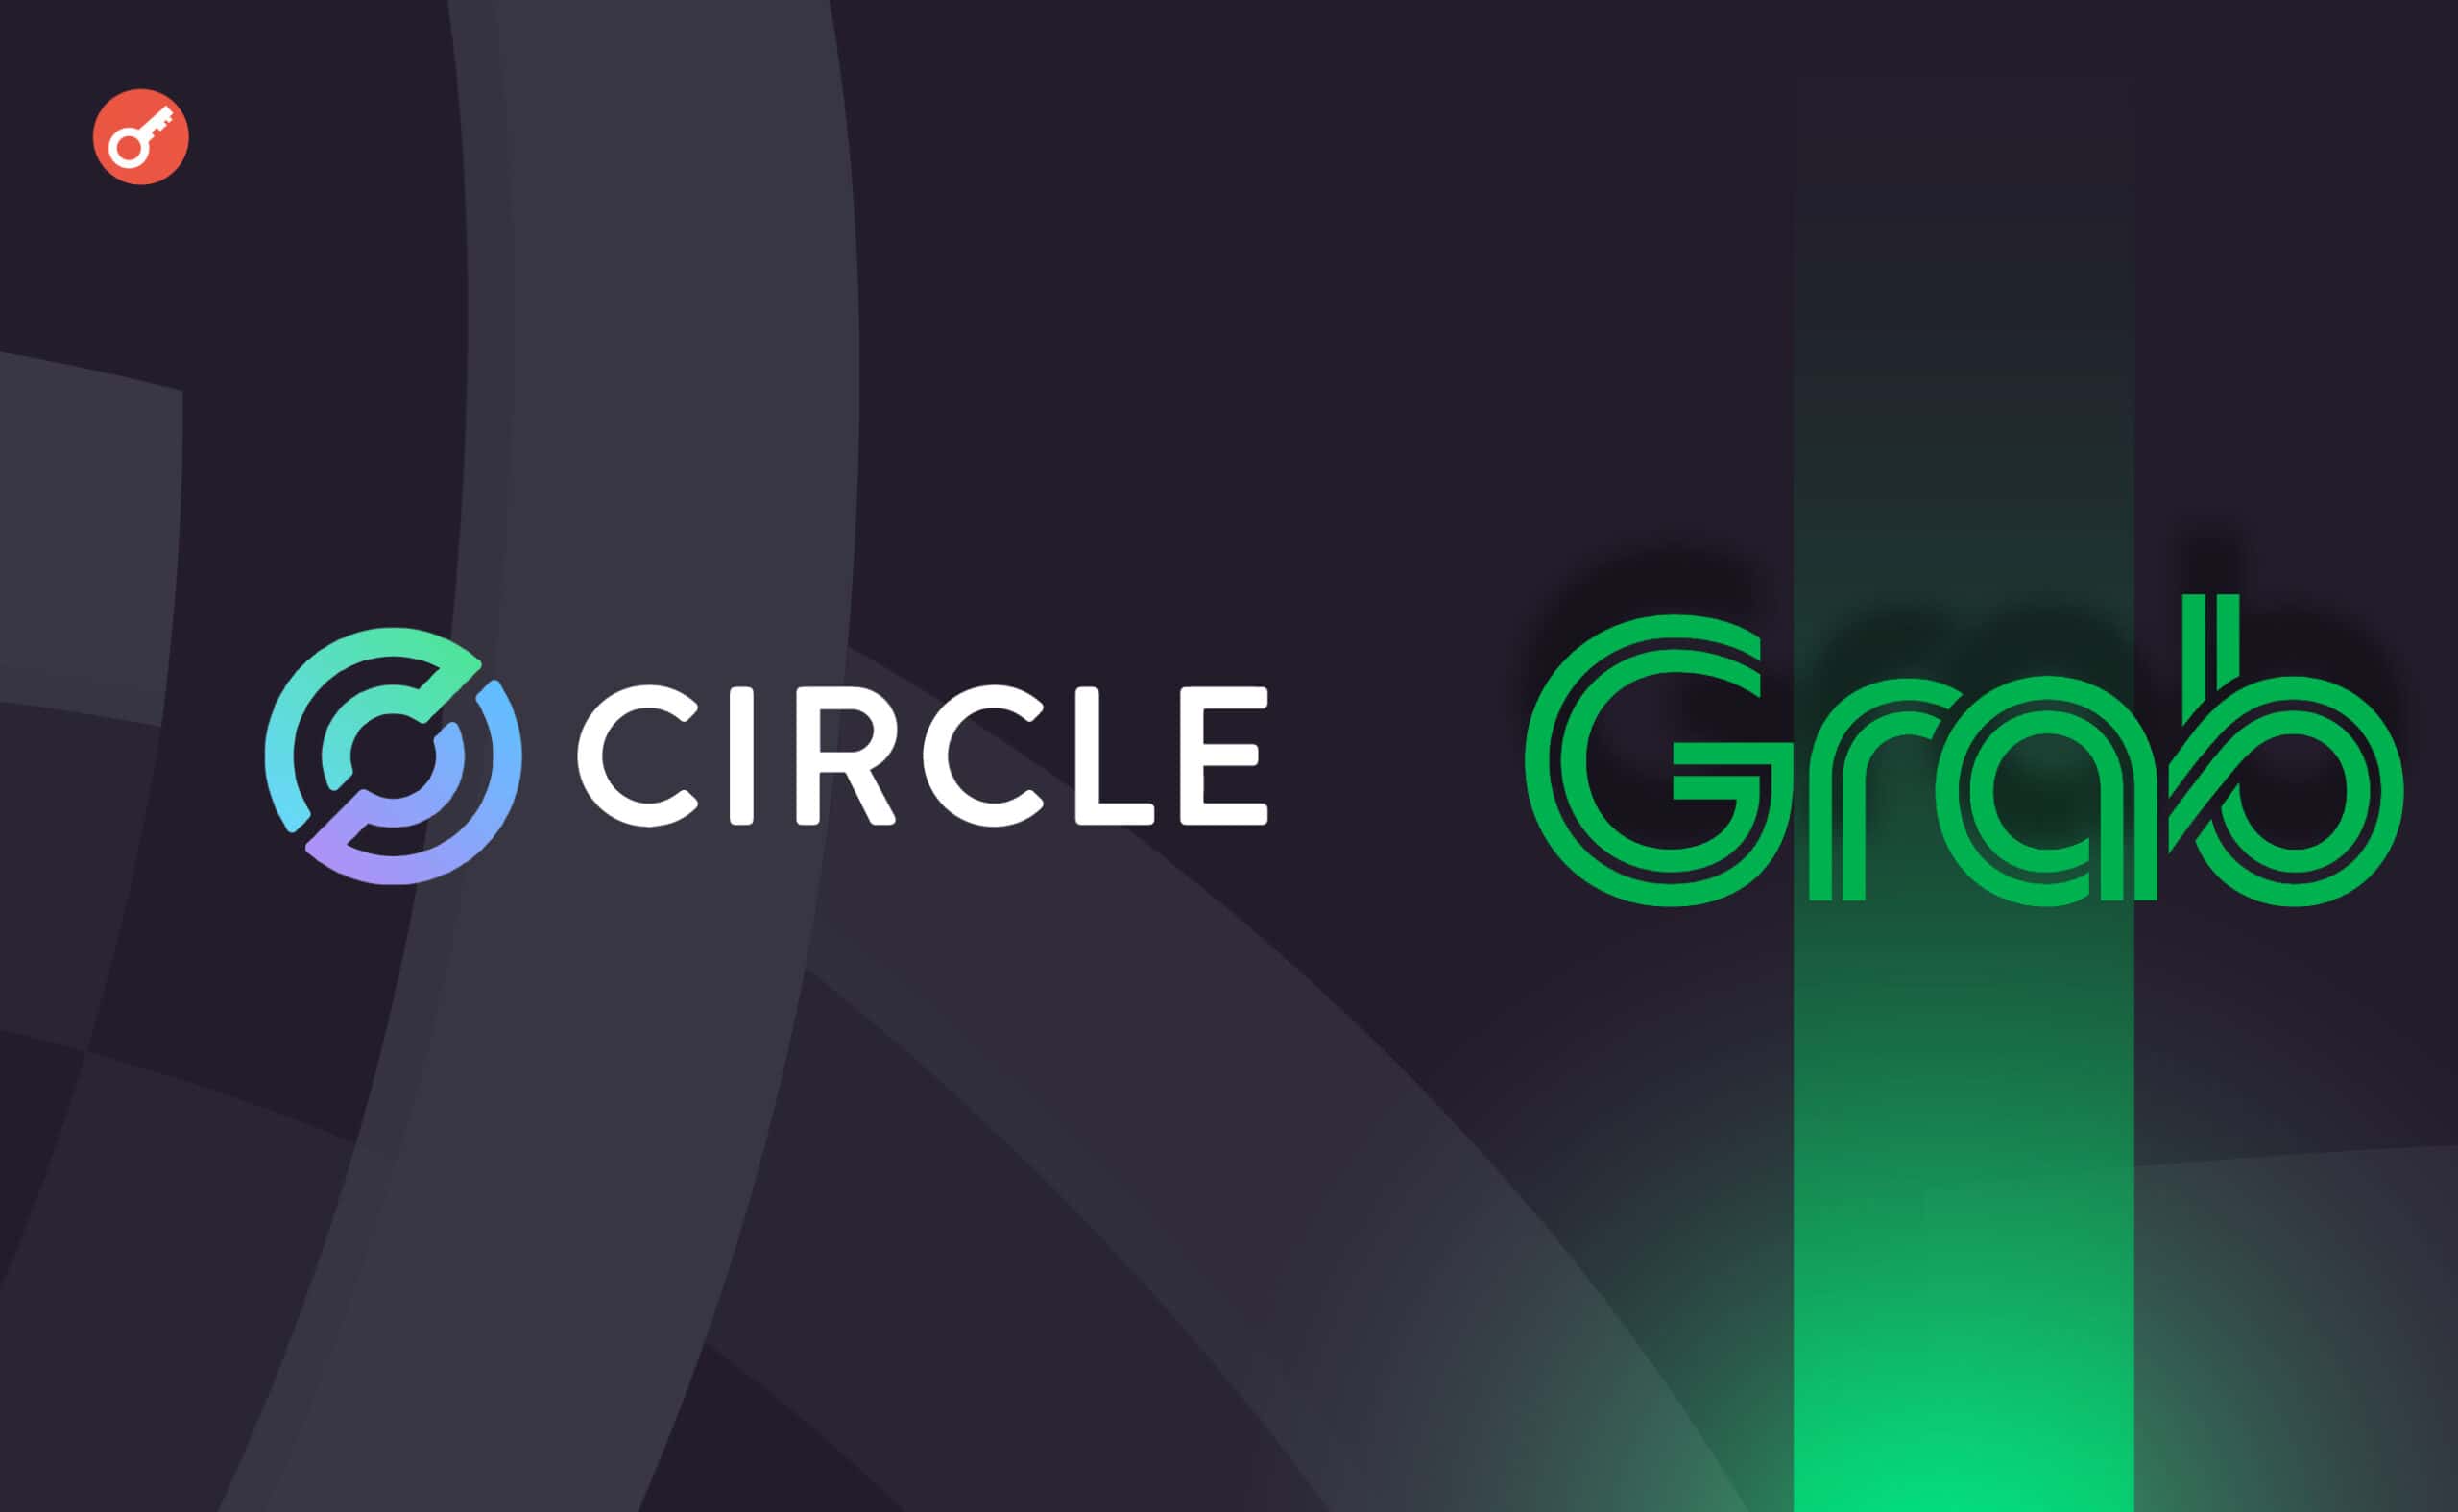 Circle оголосила про партнерство з Grab . Головний колаж новини.